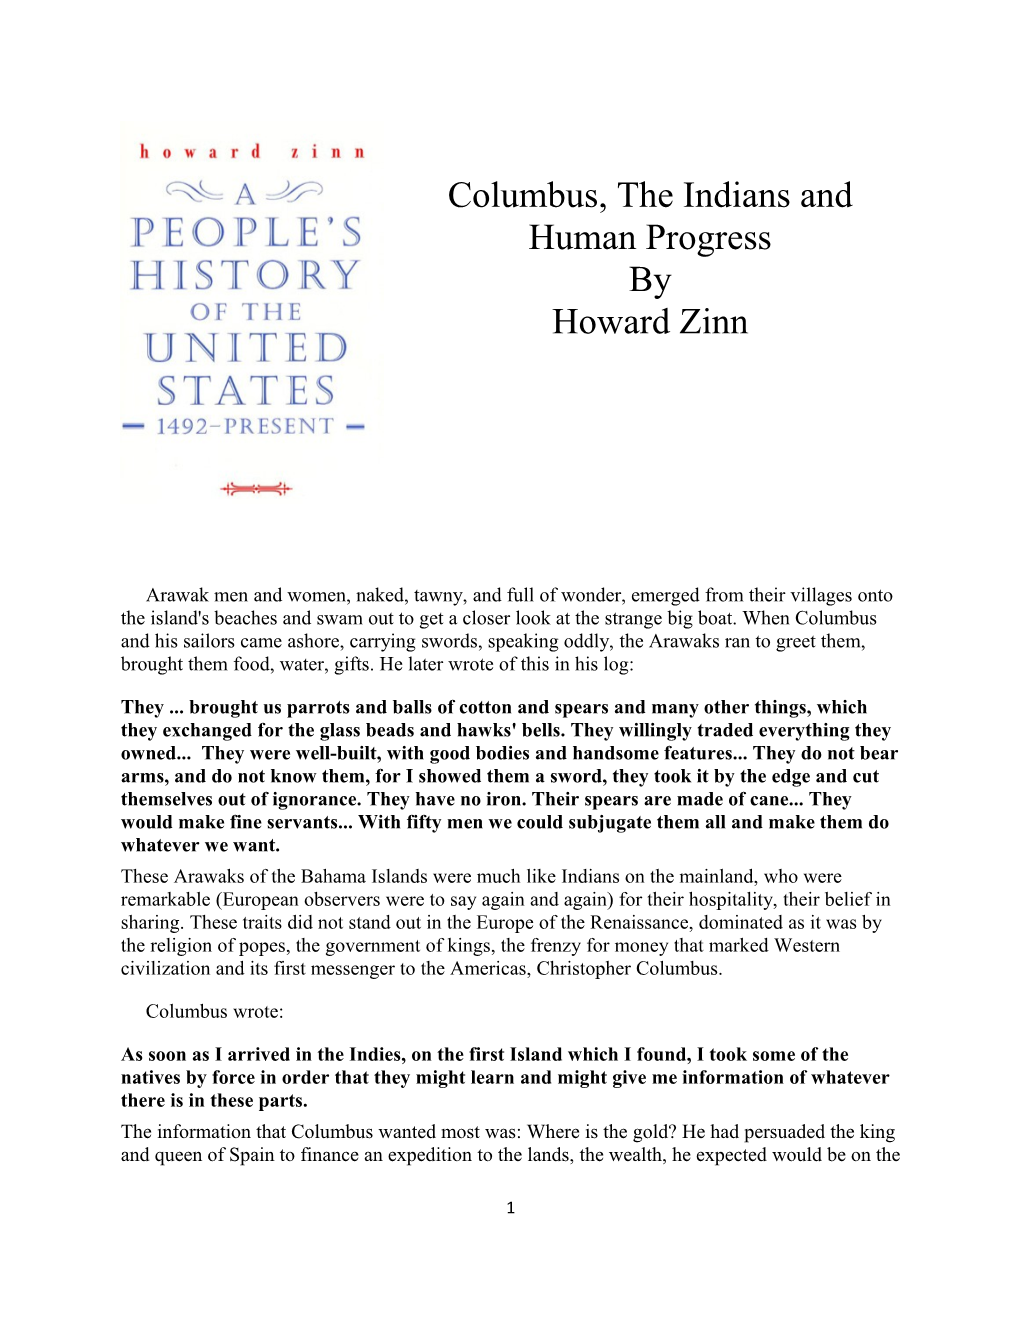 Columbus, the Indians and Human Progress